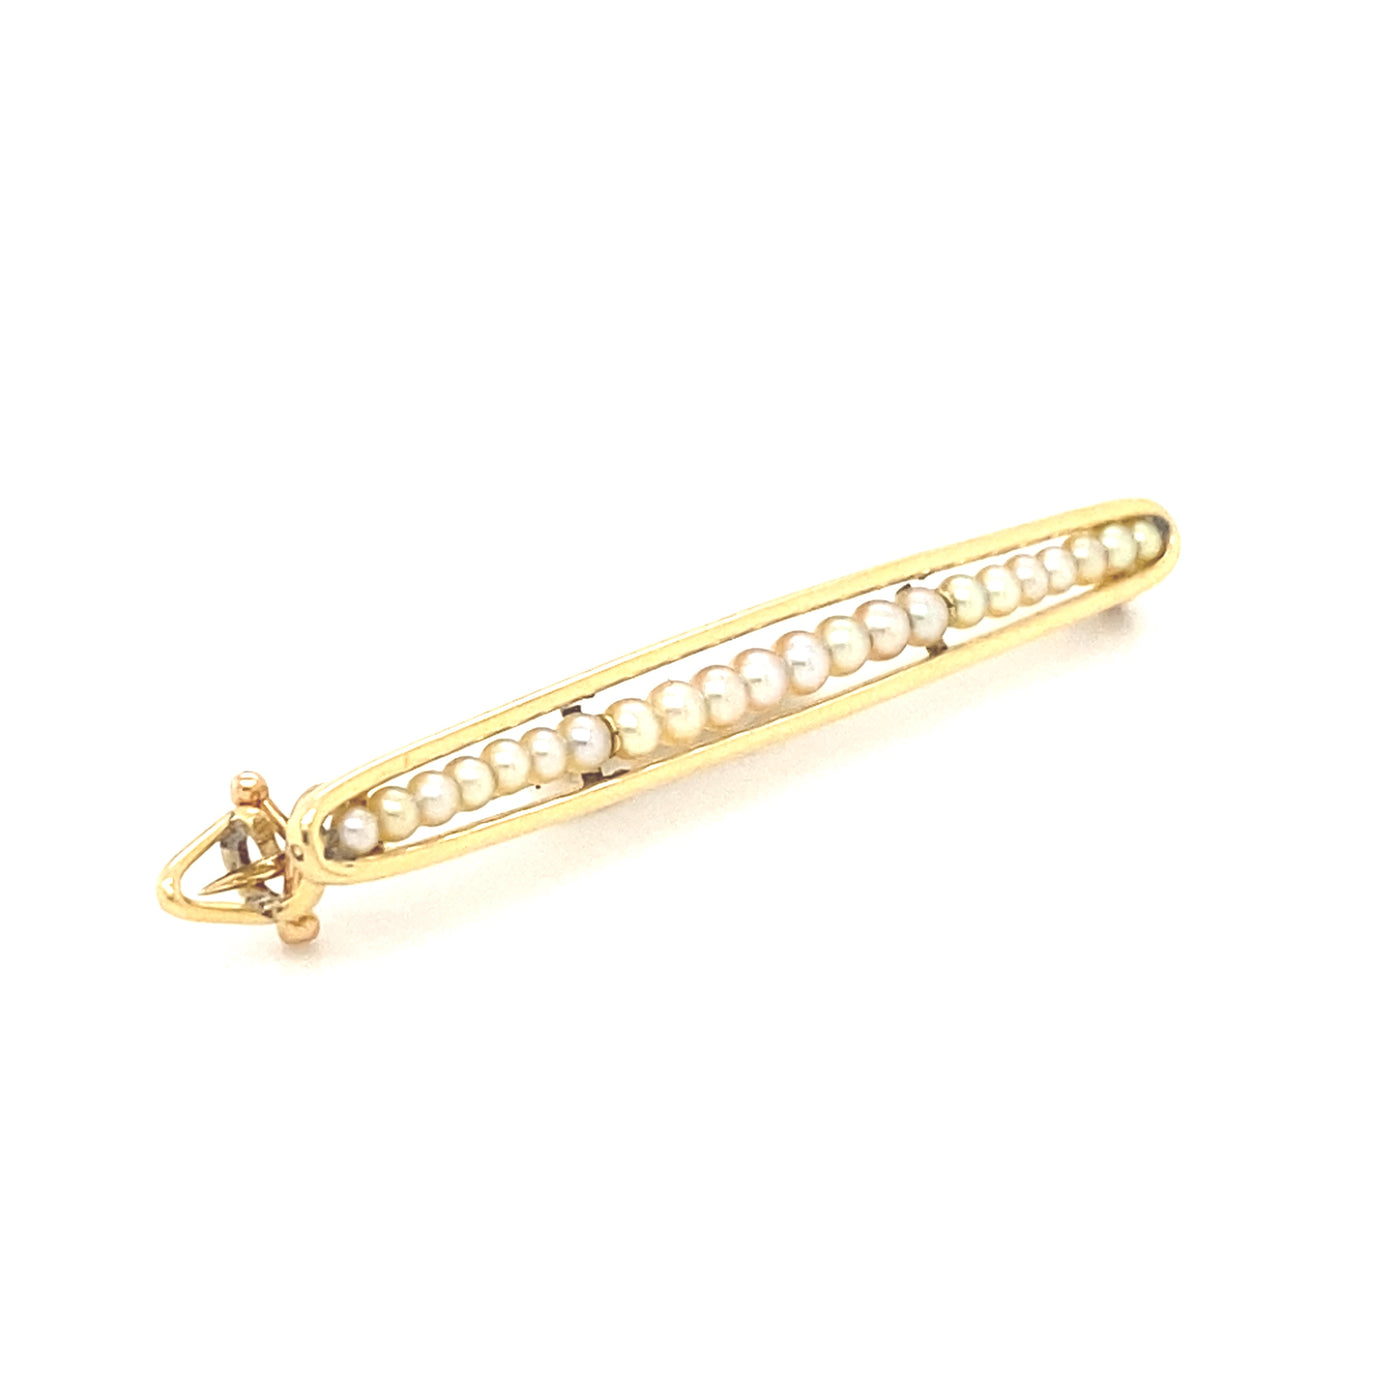 The Pearl Line - Feine, goldene Stabbrosche mit kleinen Perlen